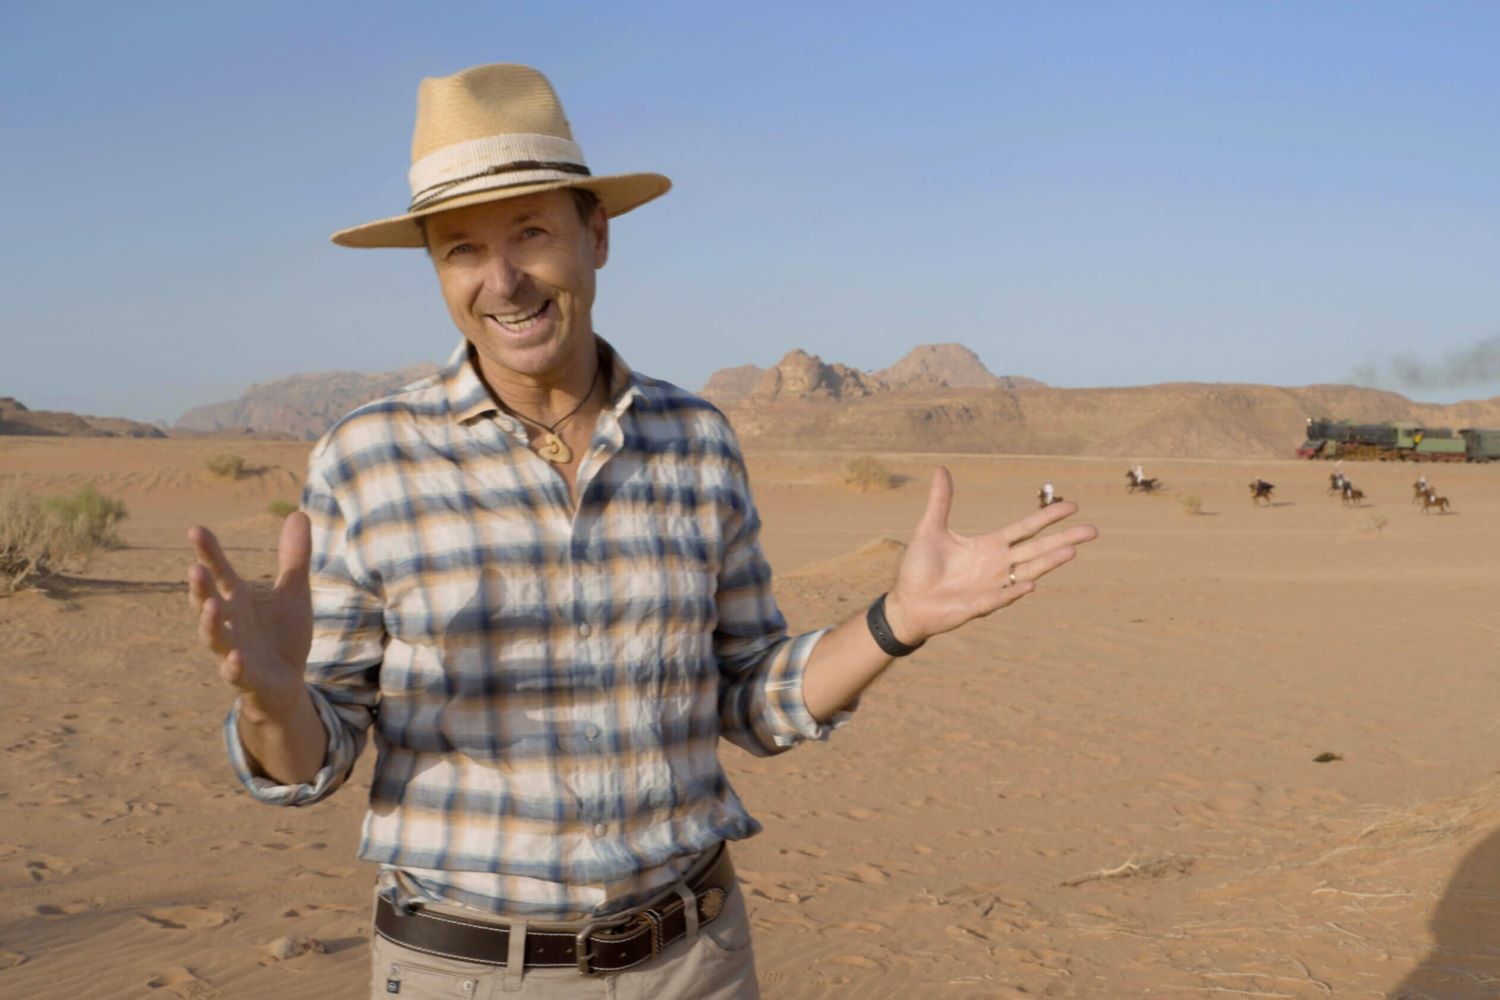 Phil Keoghan, the host of 'The Amazing Race' Season 35, appears in Jordan in season 34 wearing